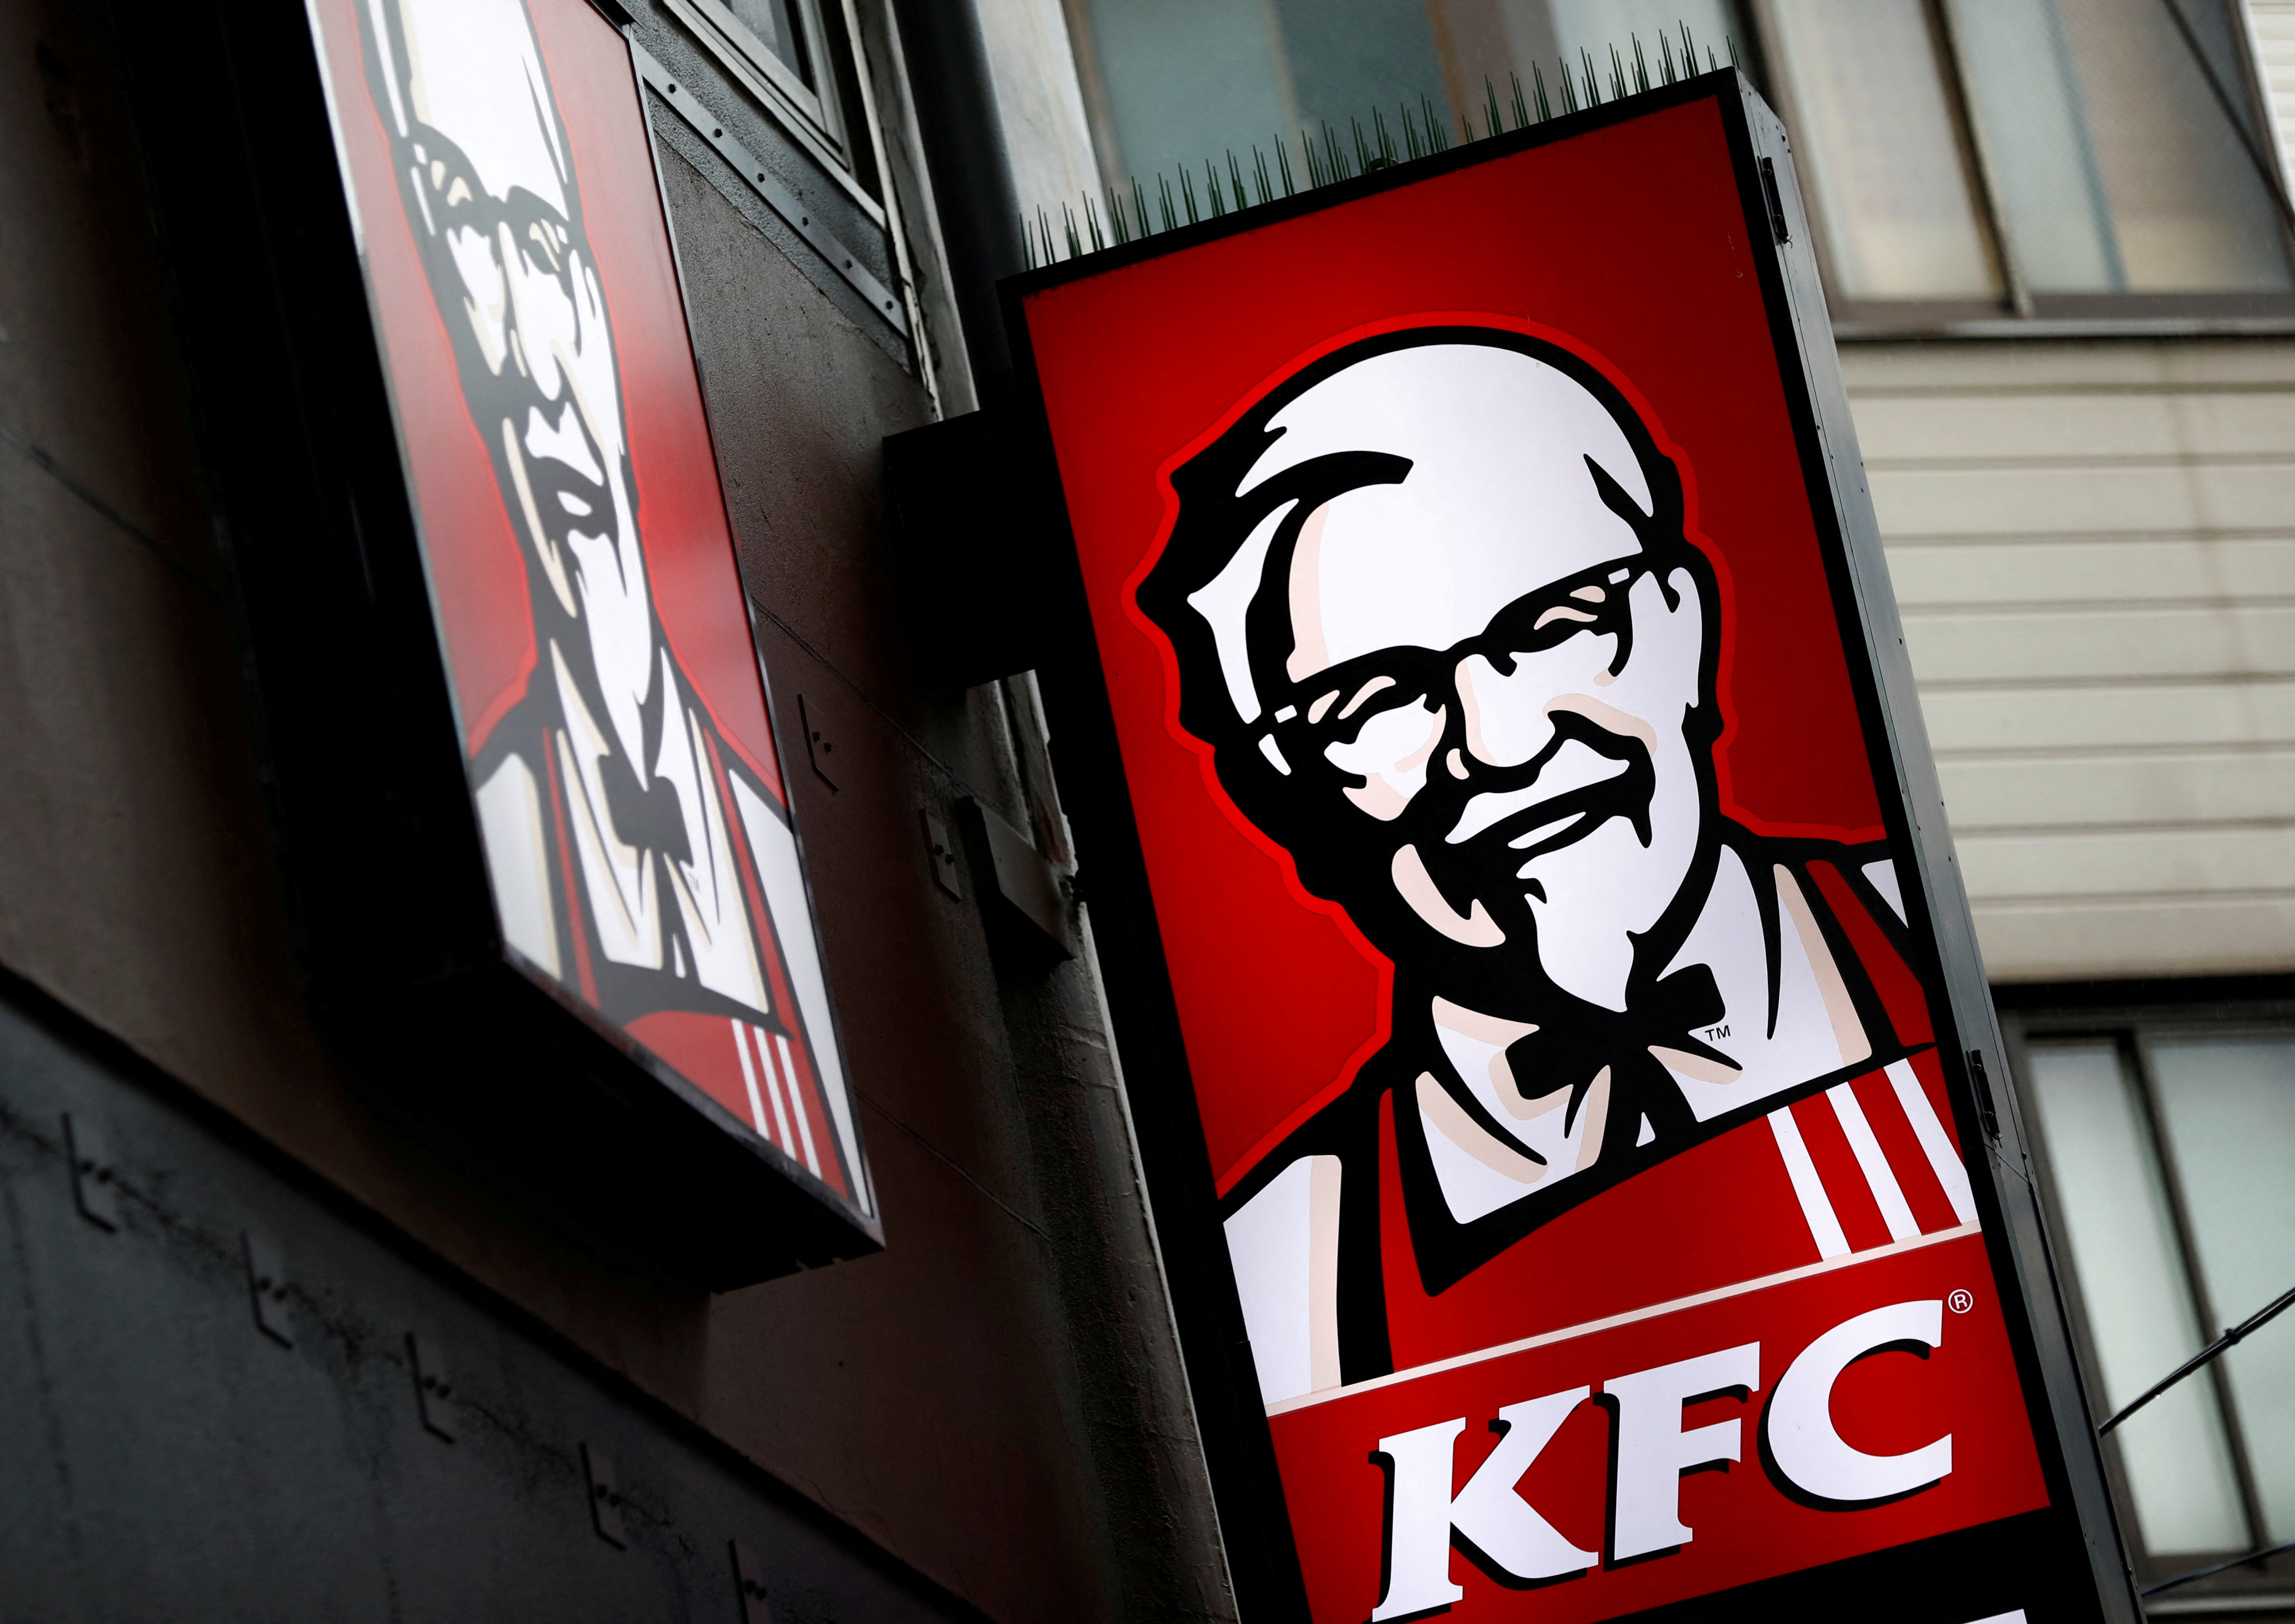 A Kentucky Fried Chicken (KFC) restaurant i